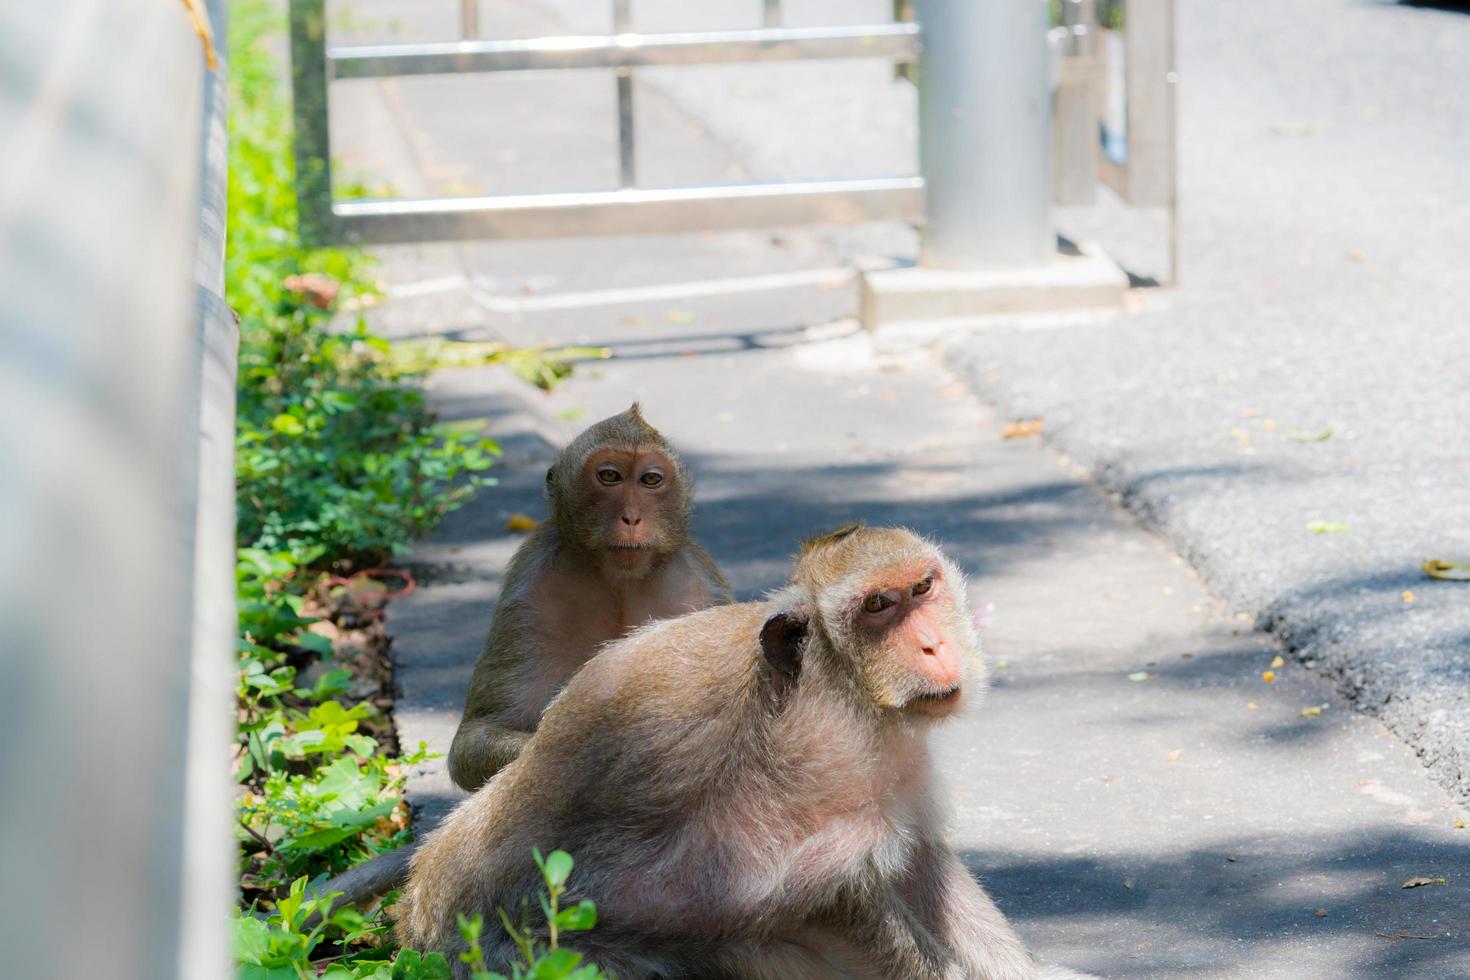 dos monos miran con sospecha y parecen borrachos. lindos monos al lado de la carretera asfaltada. animal en la ciudad. foto